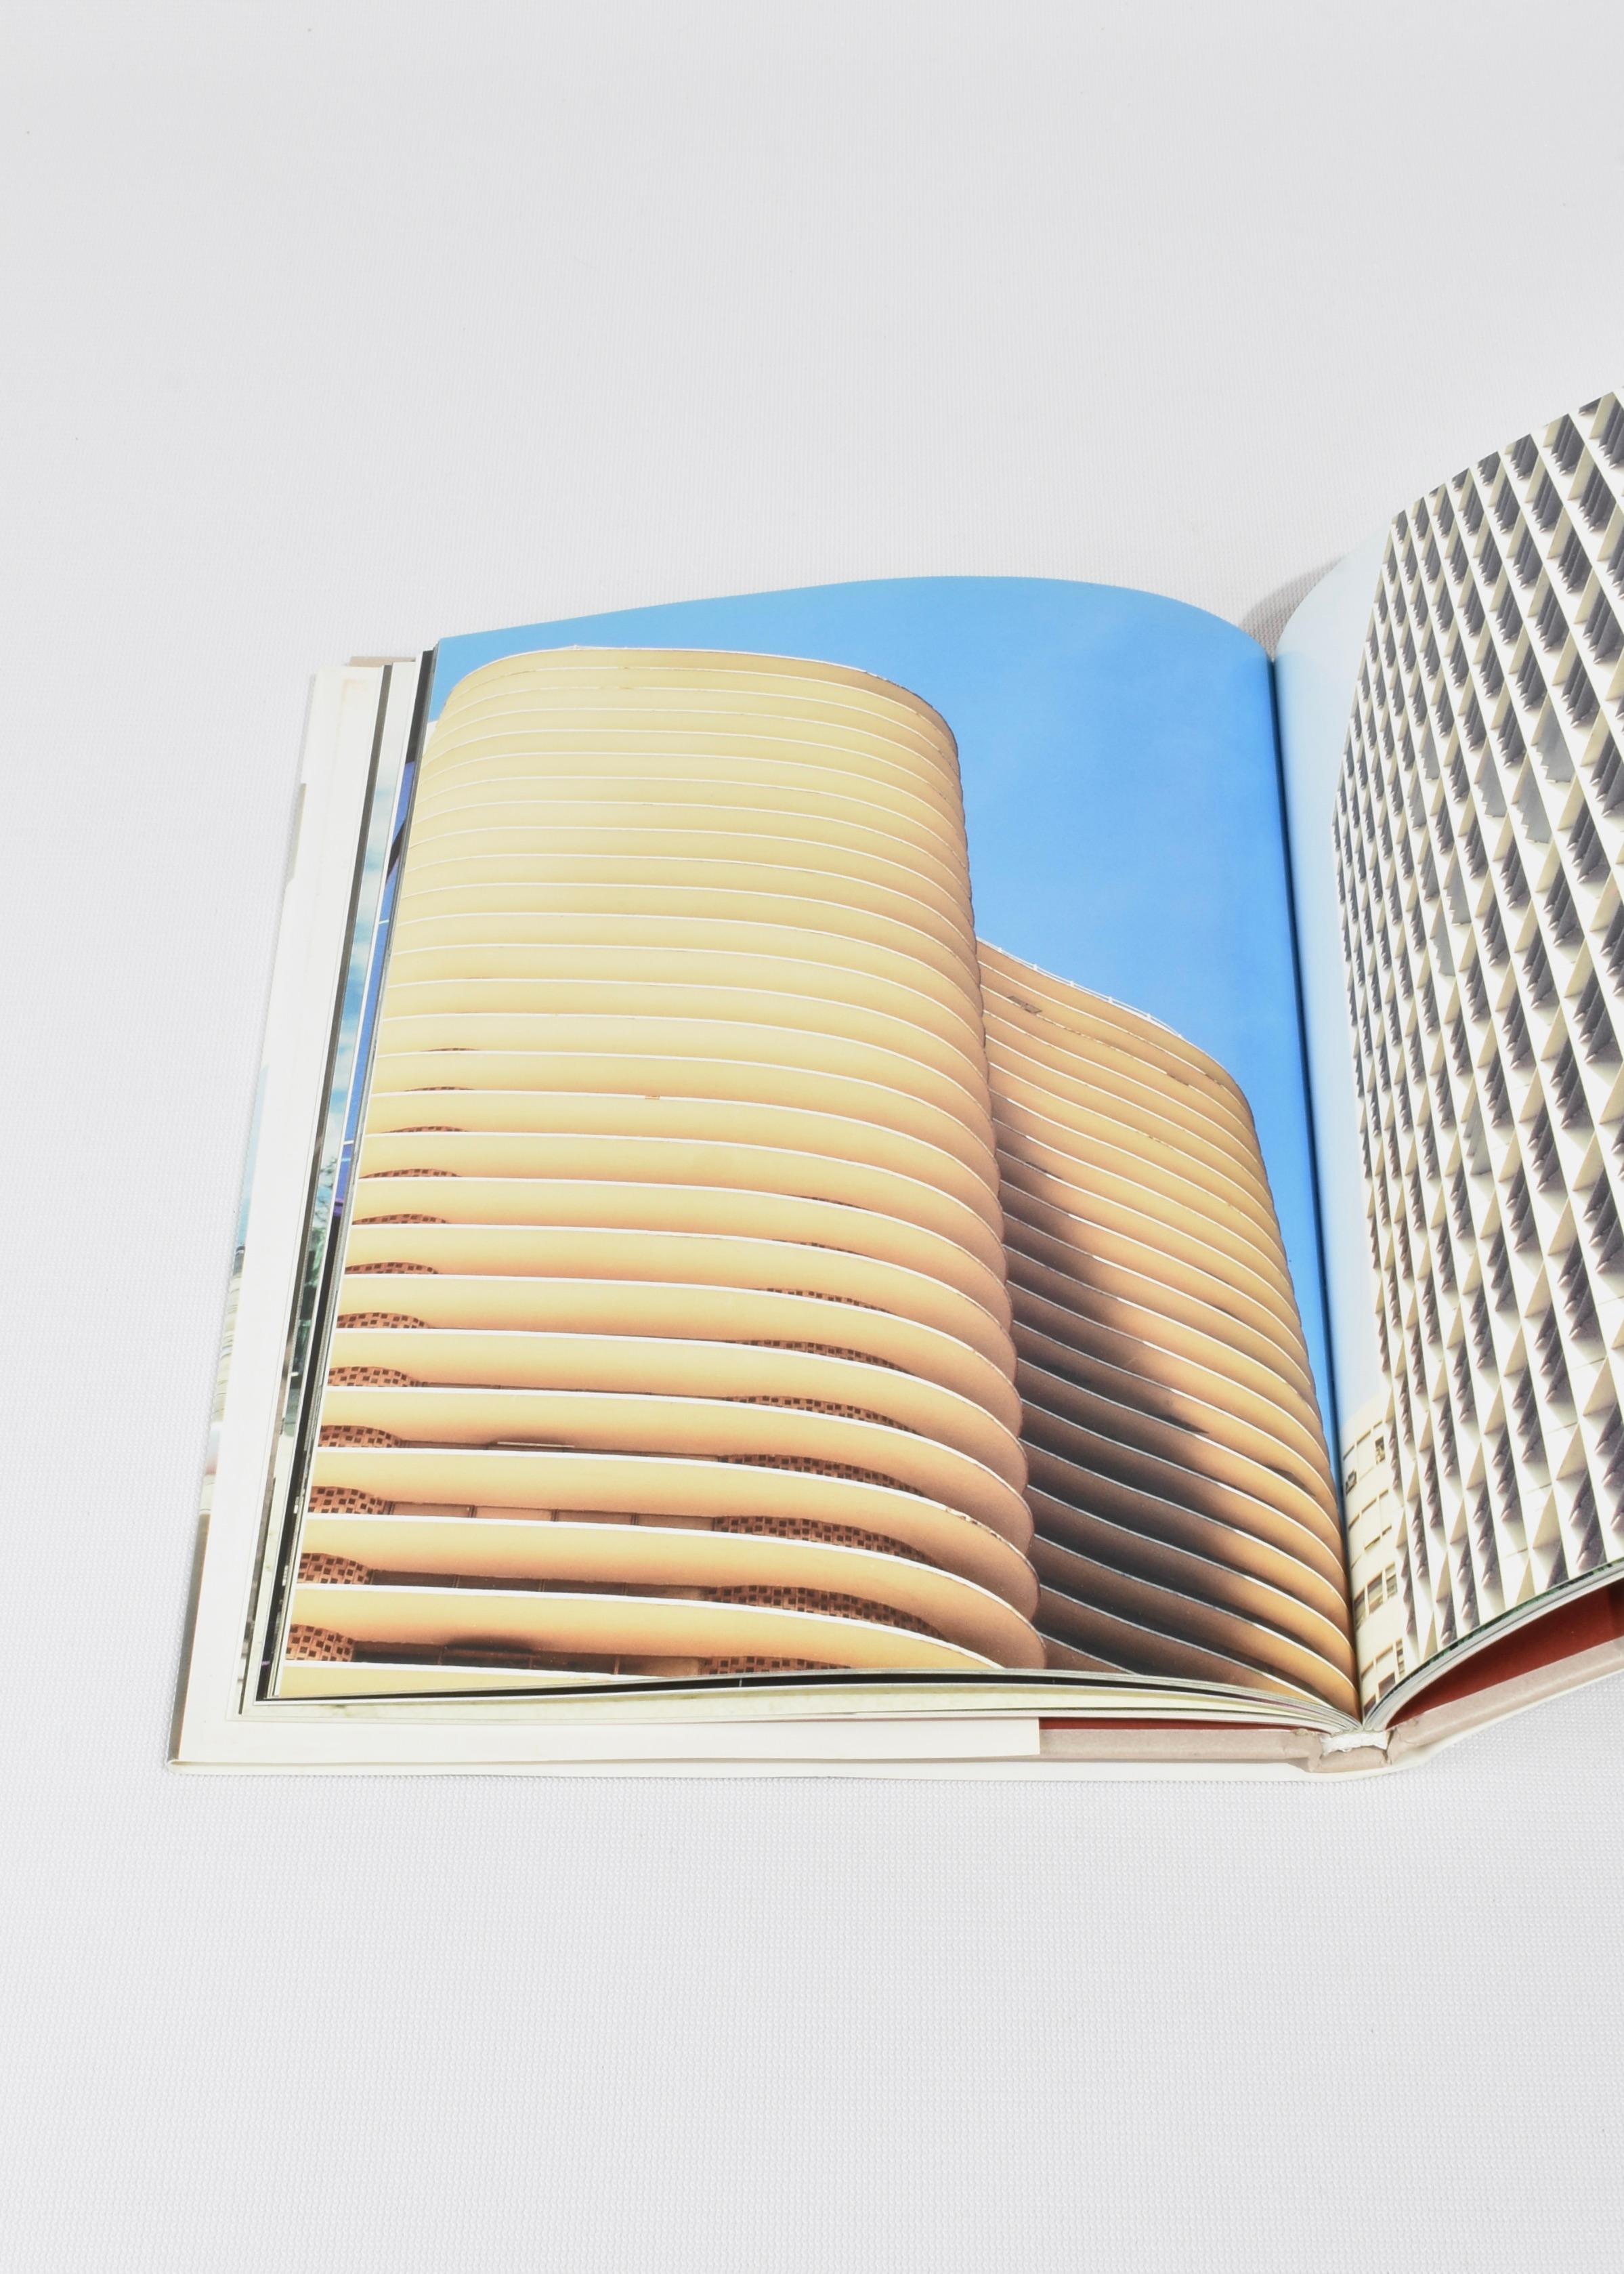 Oscar Niemeyer Book 2002 2